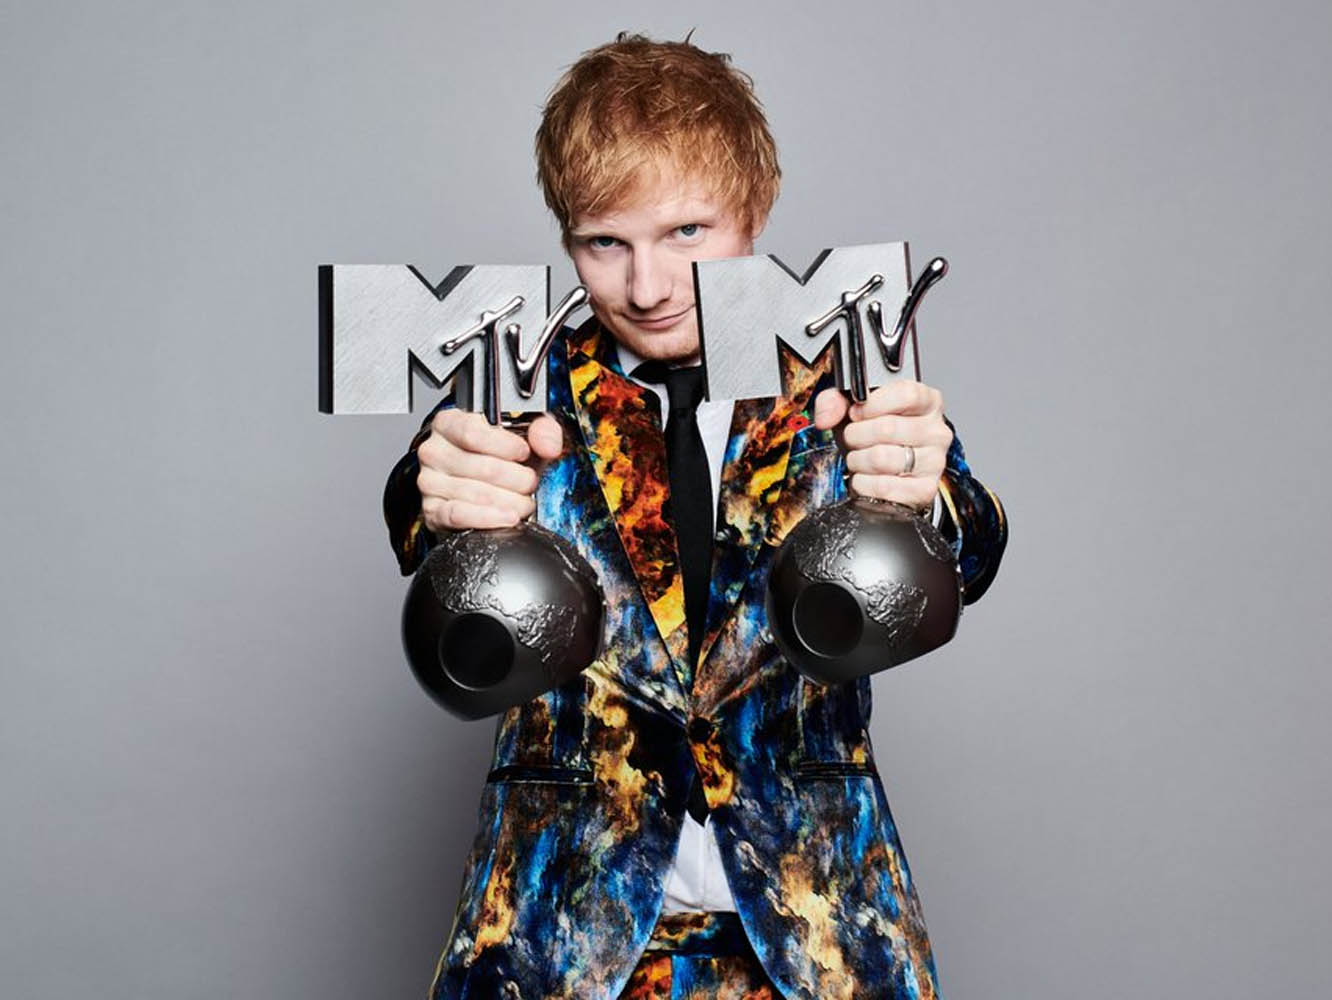 Ed Sheeran ya es el primer artista en alcanzar 3 mil millo de reproducciones en Spotify